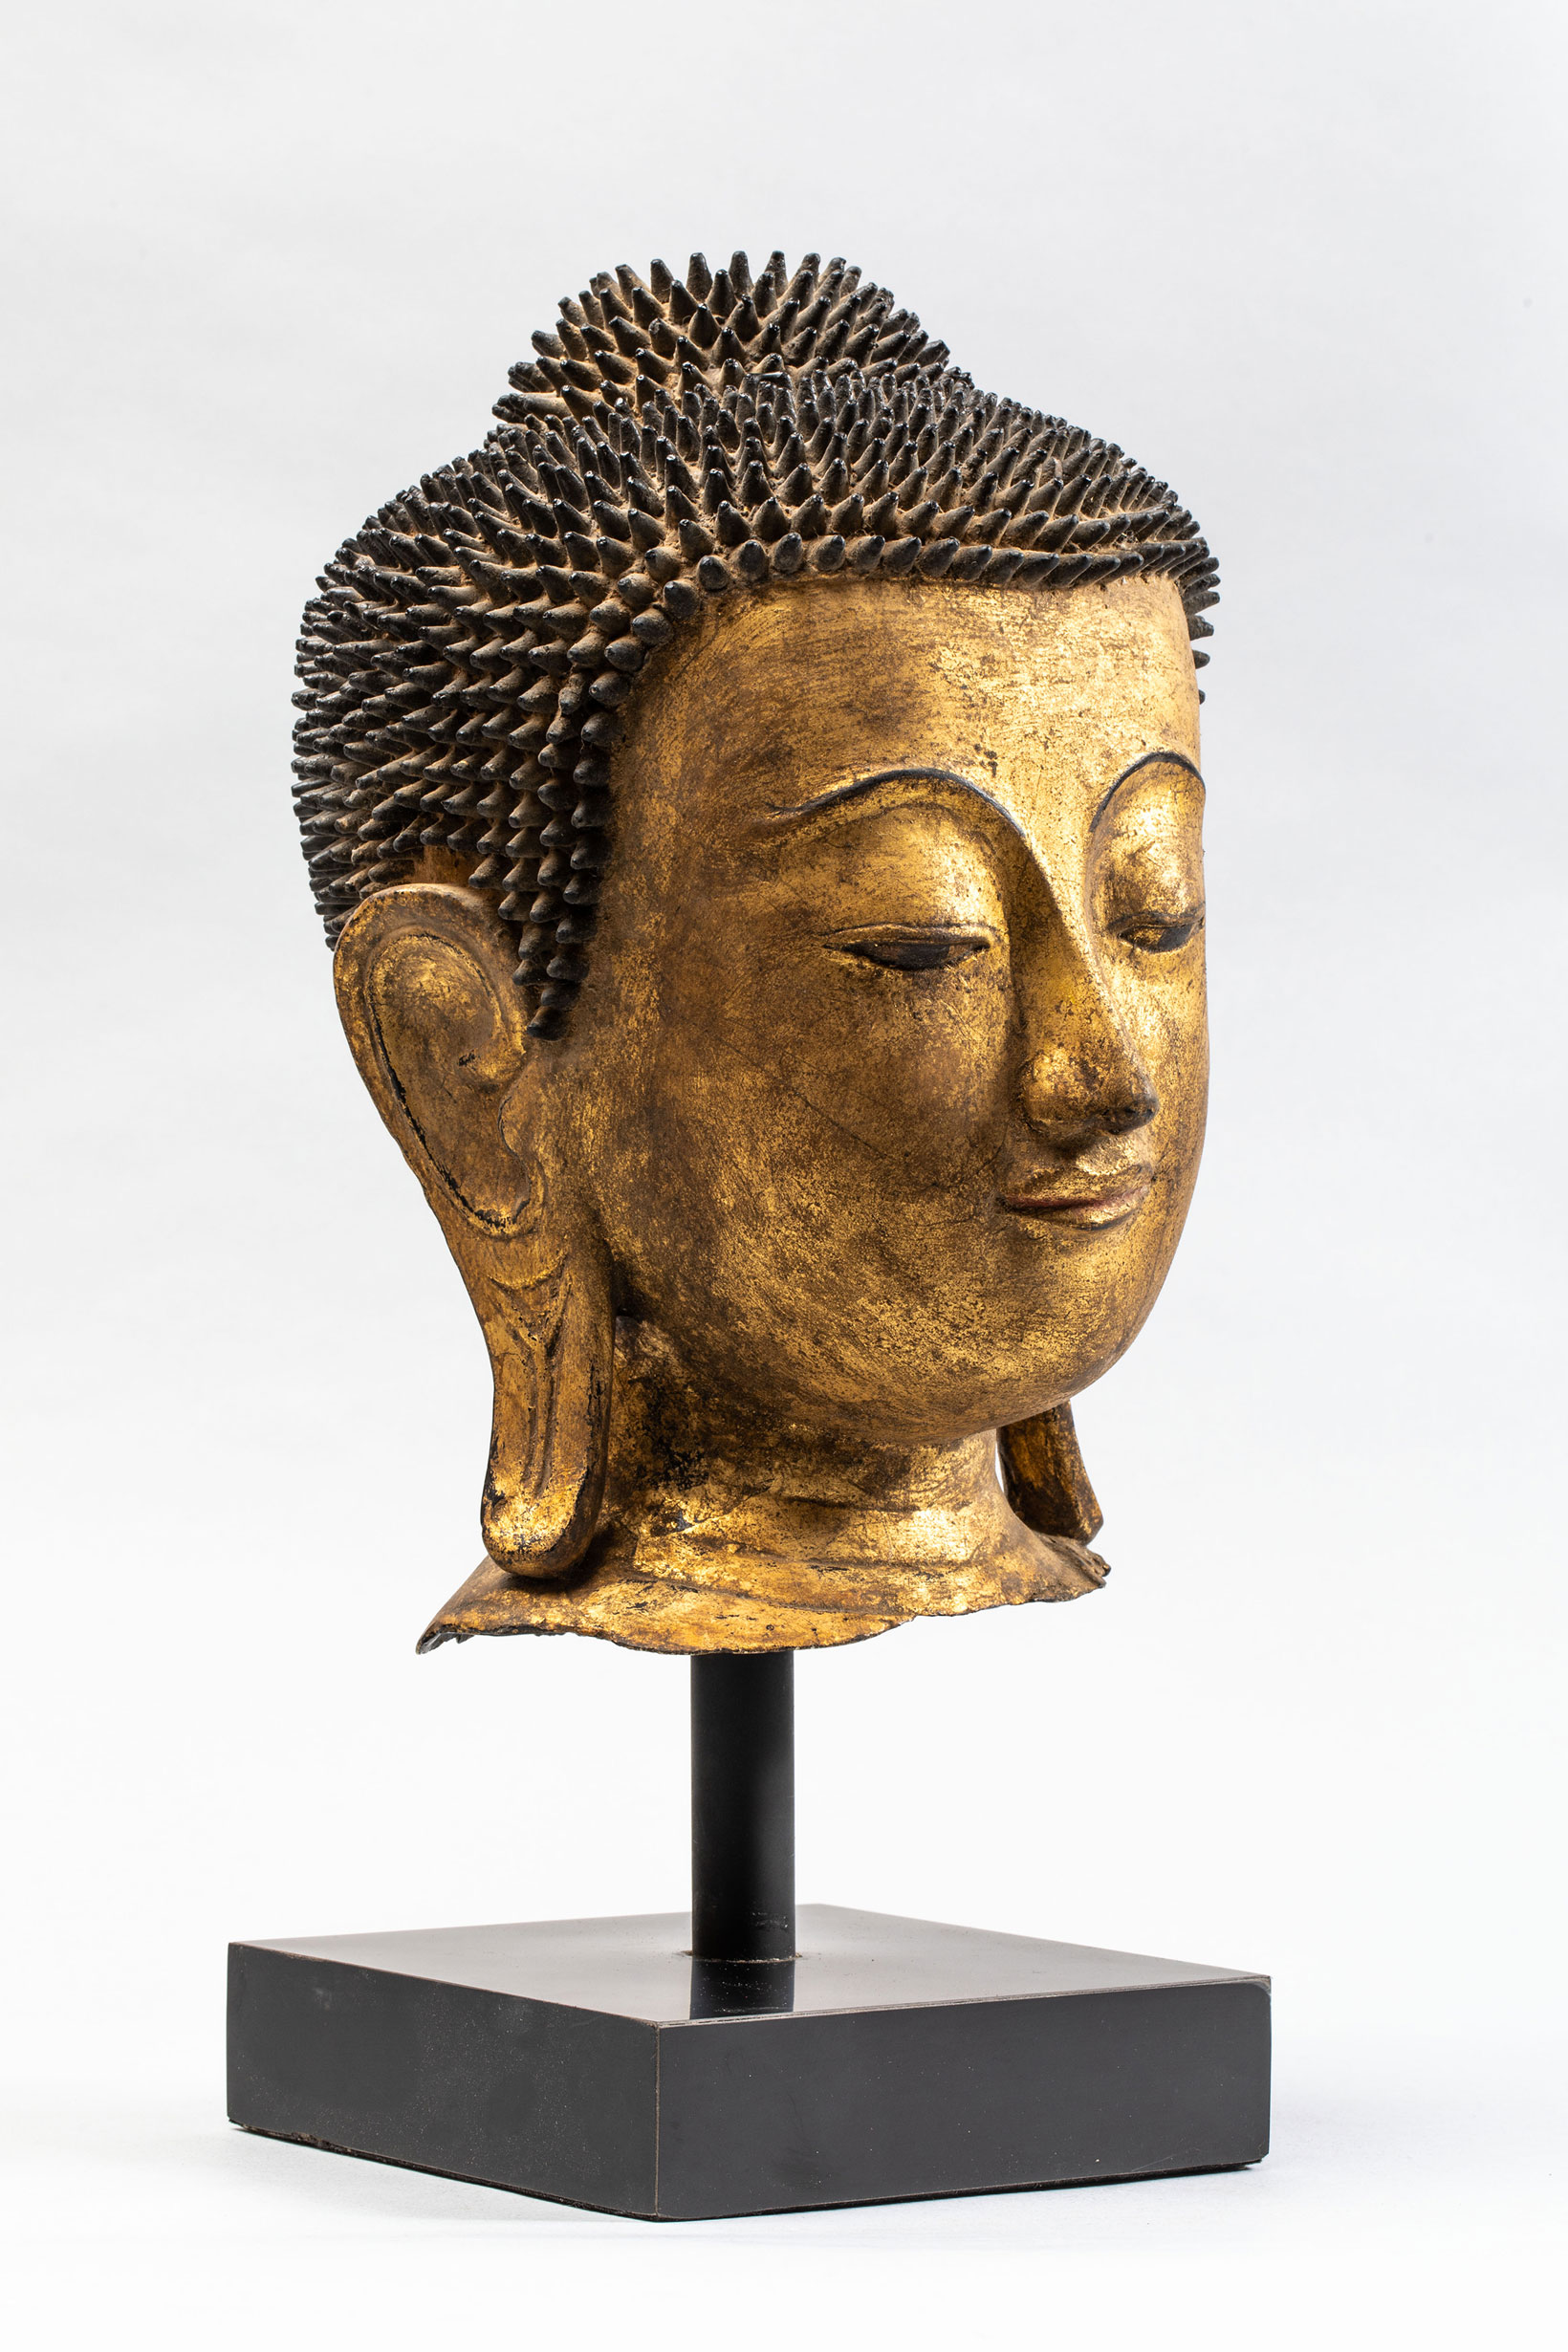 Tête de Buddha coiffée de fines bouclettes hérissées surmontée de la protubérance crânienne ushnisha - Image 2 of 4